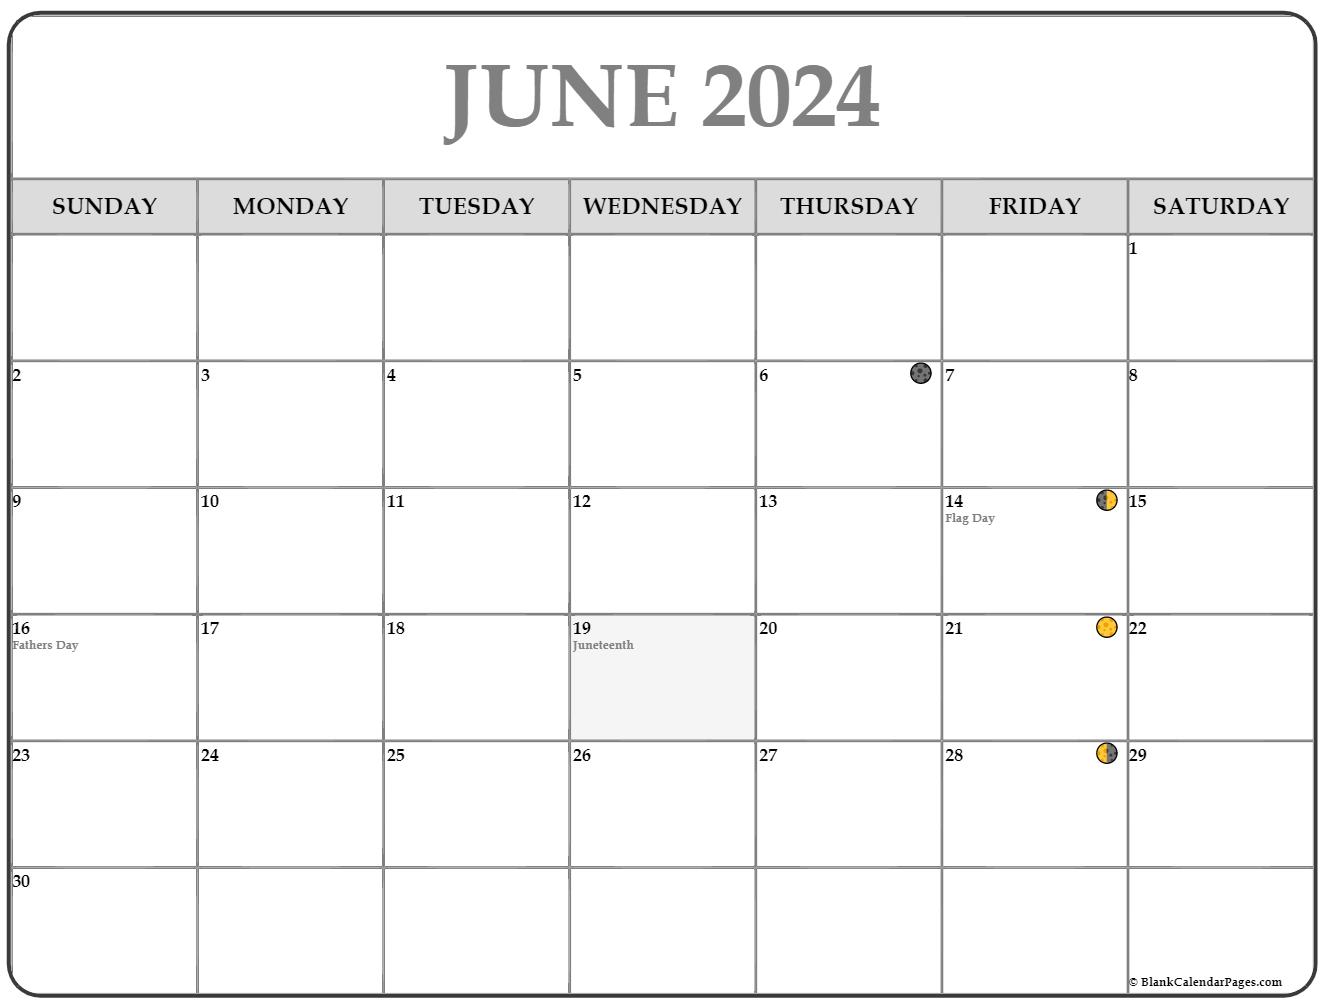 Moon Schedule June 2022 June 2022 Lunar Calendar | Moon Phase Calendar